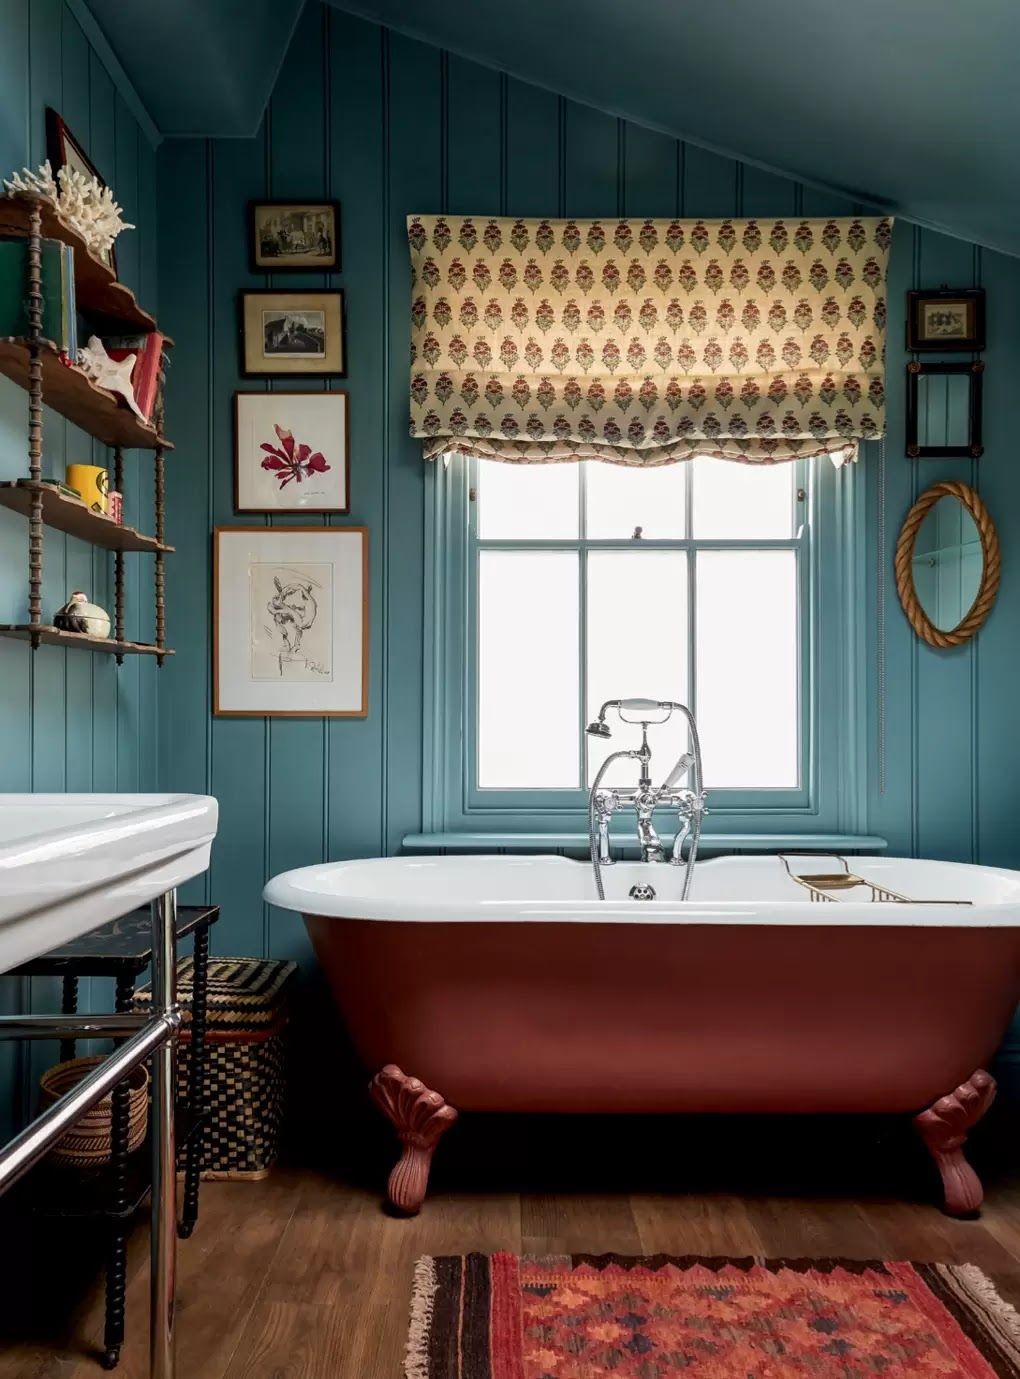 Banheira vitoriana: 6 banheiros charmosos decorados com a peça (Foto: Divulgação)